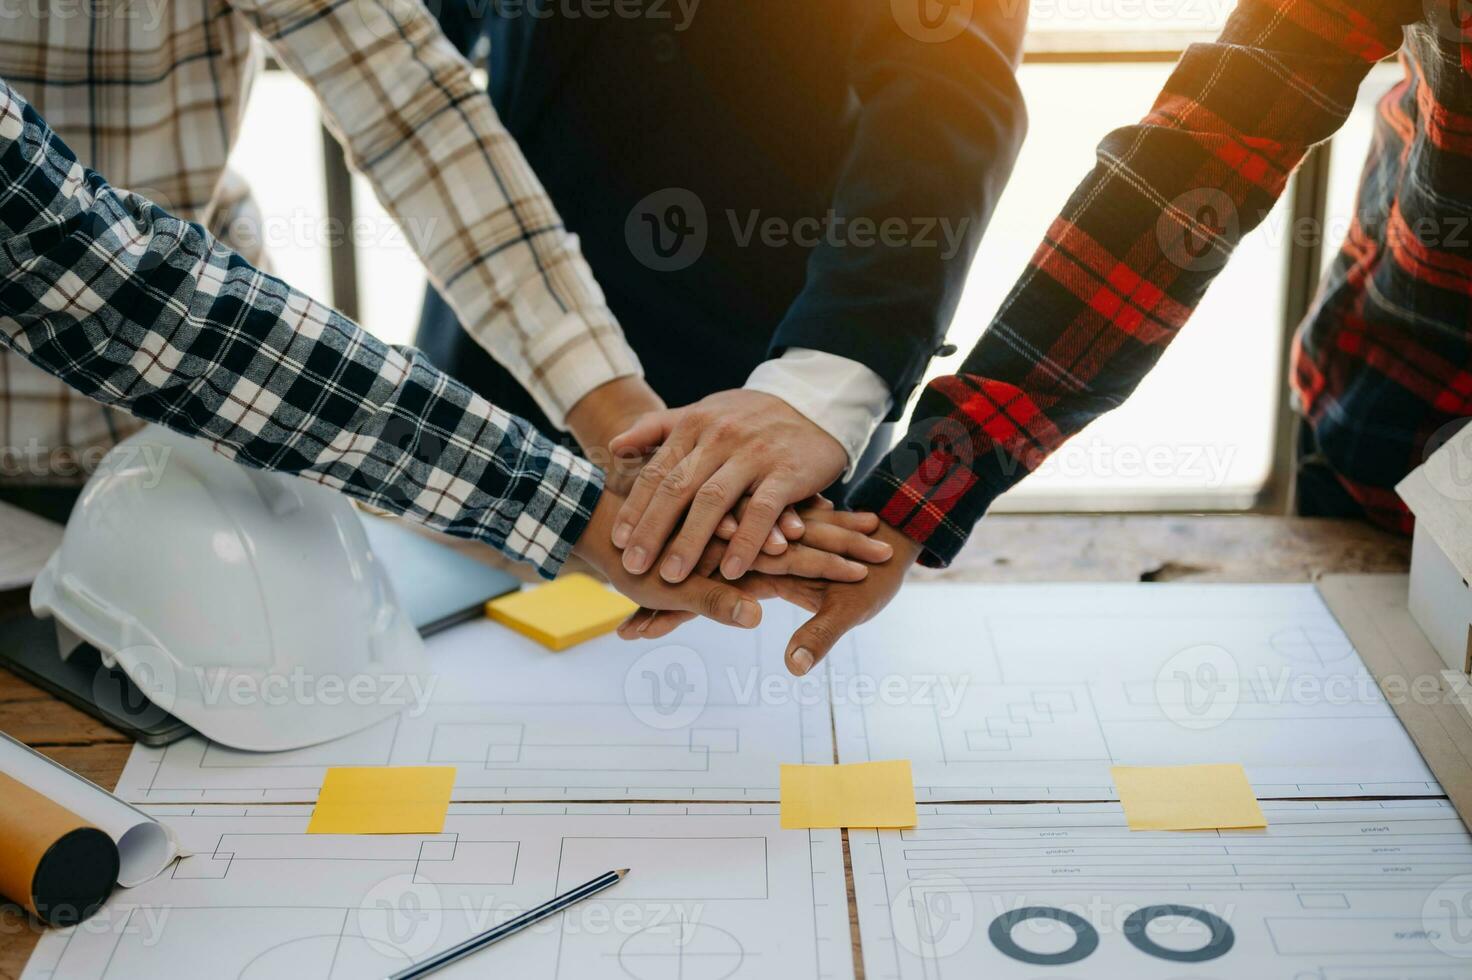 engenheiro e empreiteiro dão as mãos após a assinatura do contrato, eles estão tendo um projeto de construção moderno juntos. conceito de cooperação bem-sucedida foto